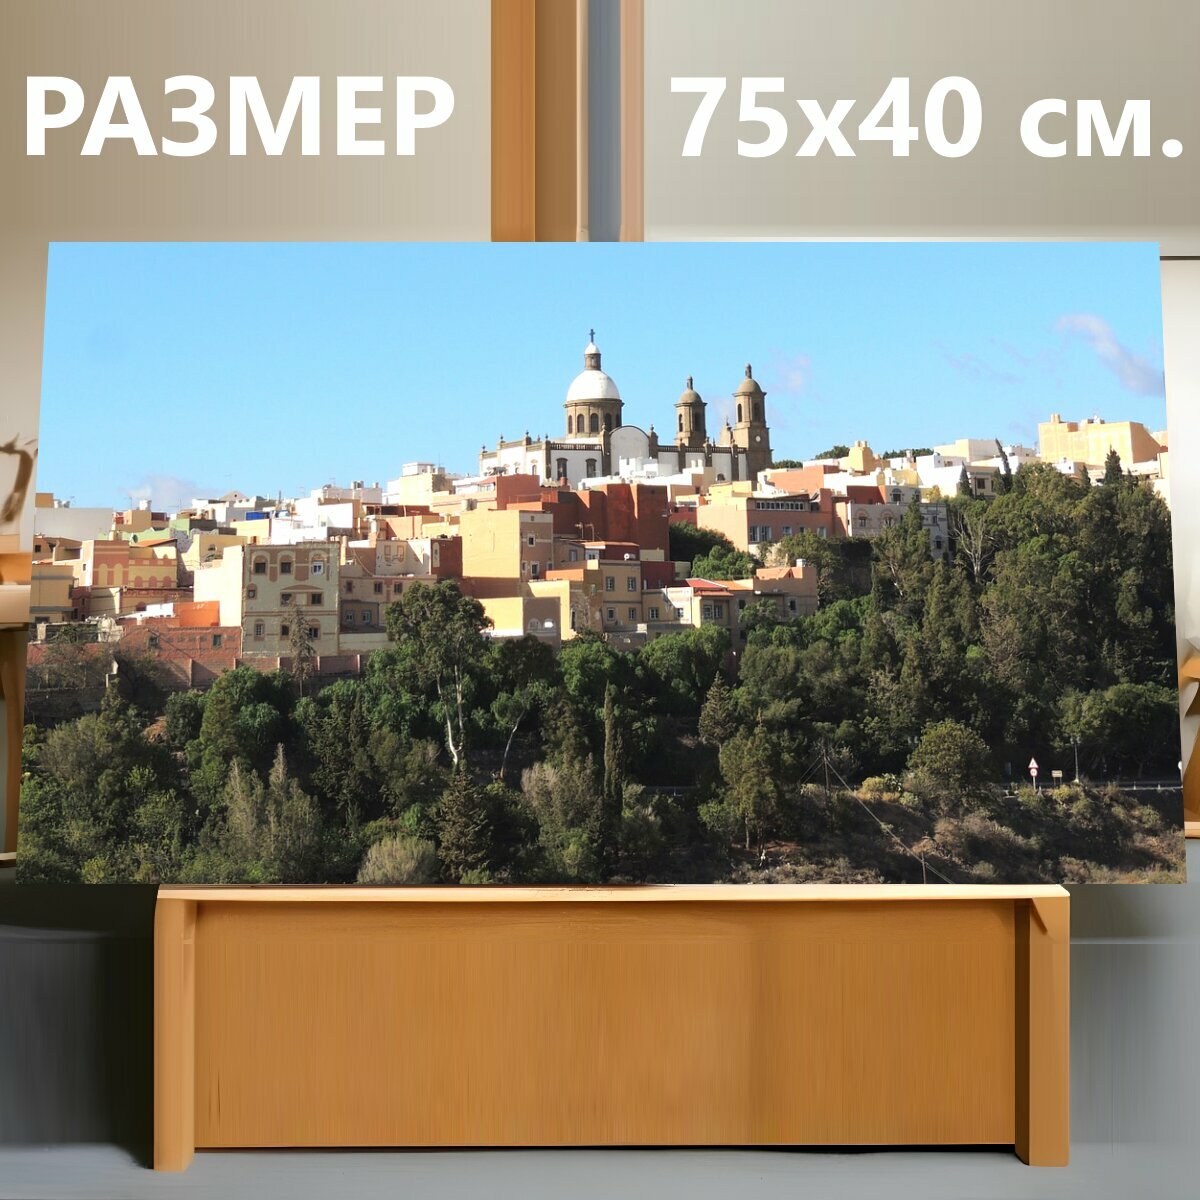 Картина на холсте "Пейзаж, церковь, храм" на подрамнике 75х40 см. для интерьера